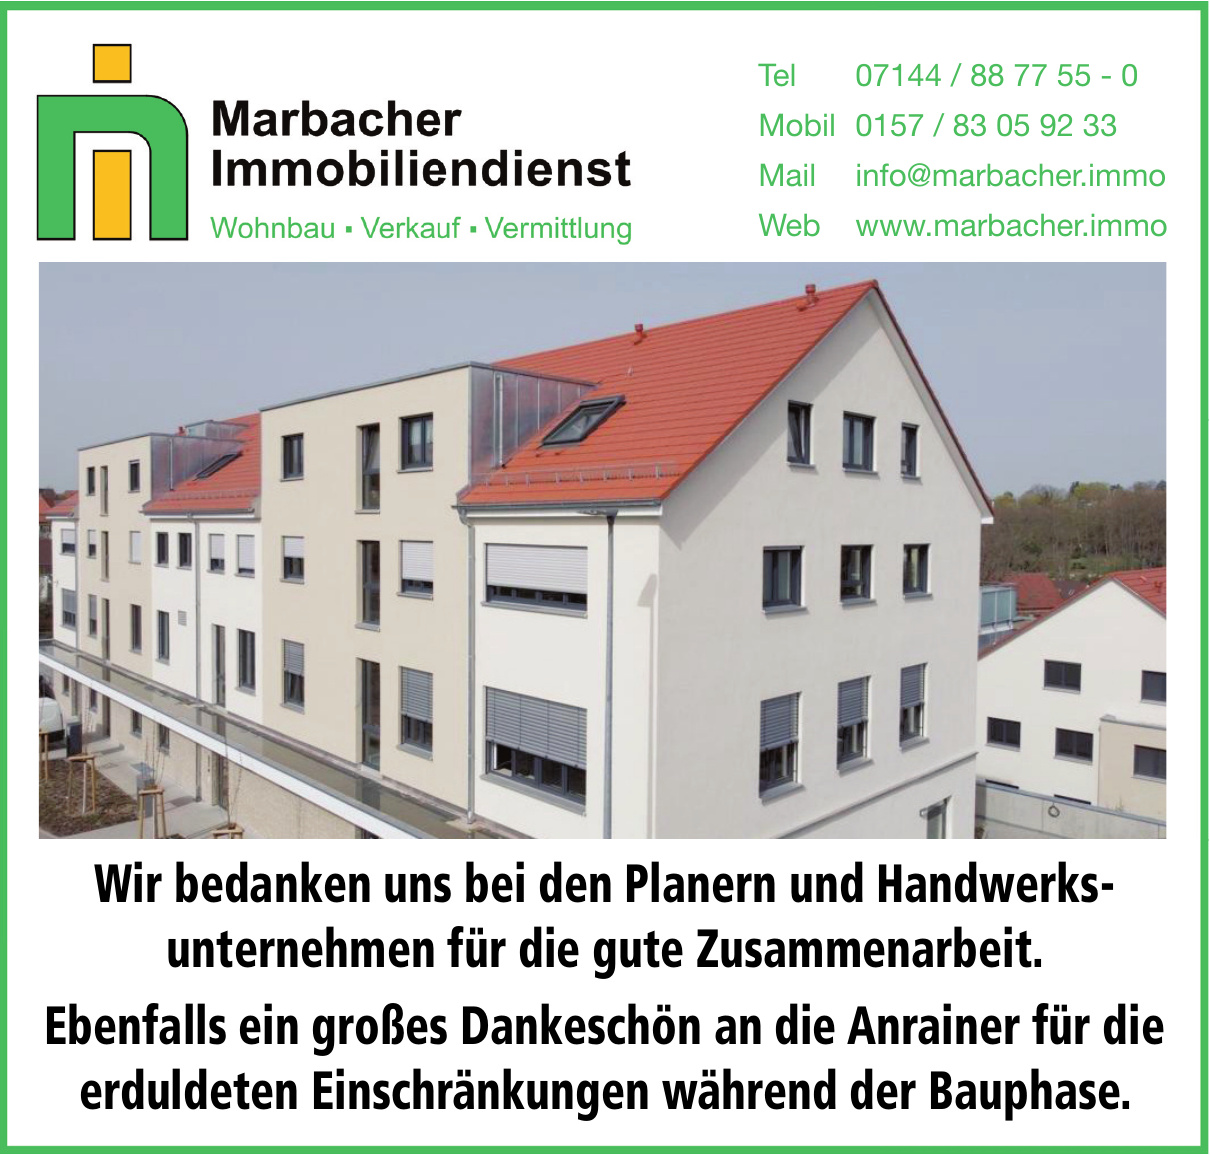 Marbacher Immobiliendienst GmbH